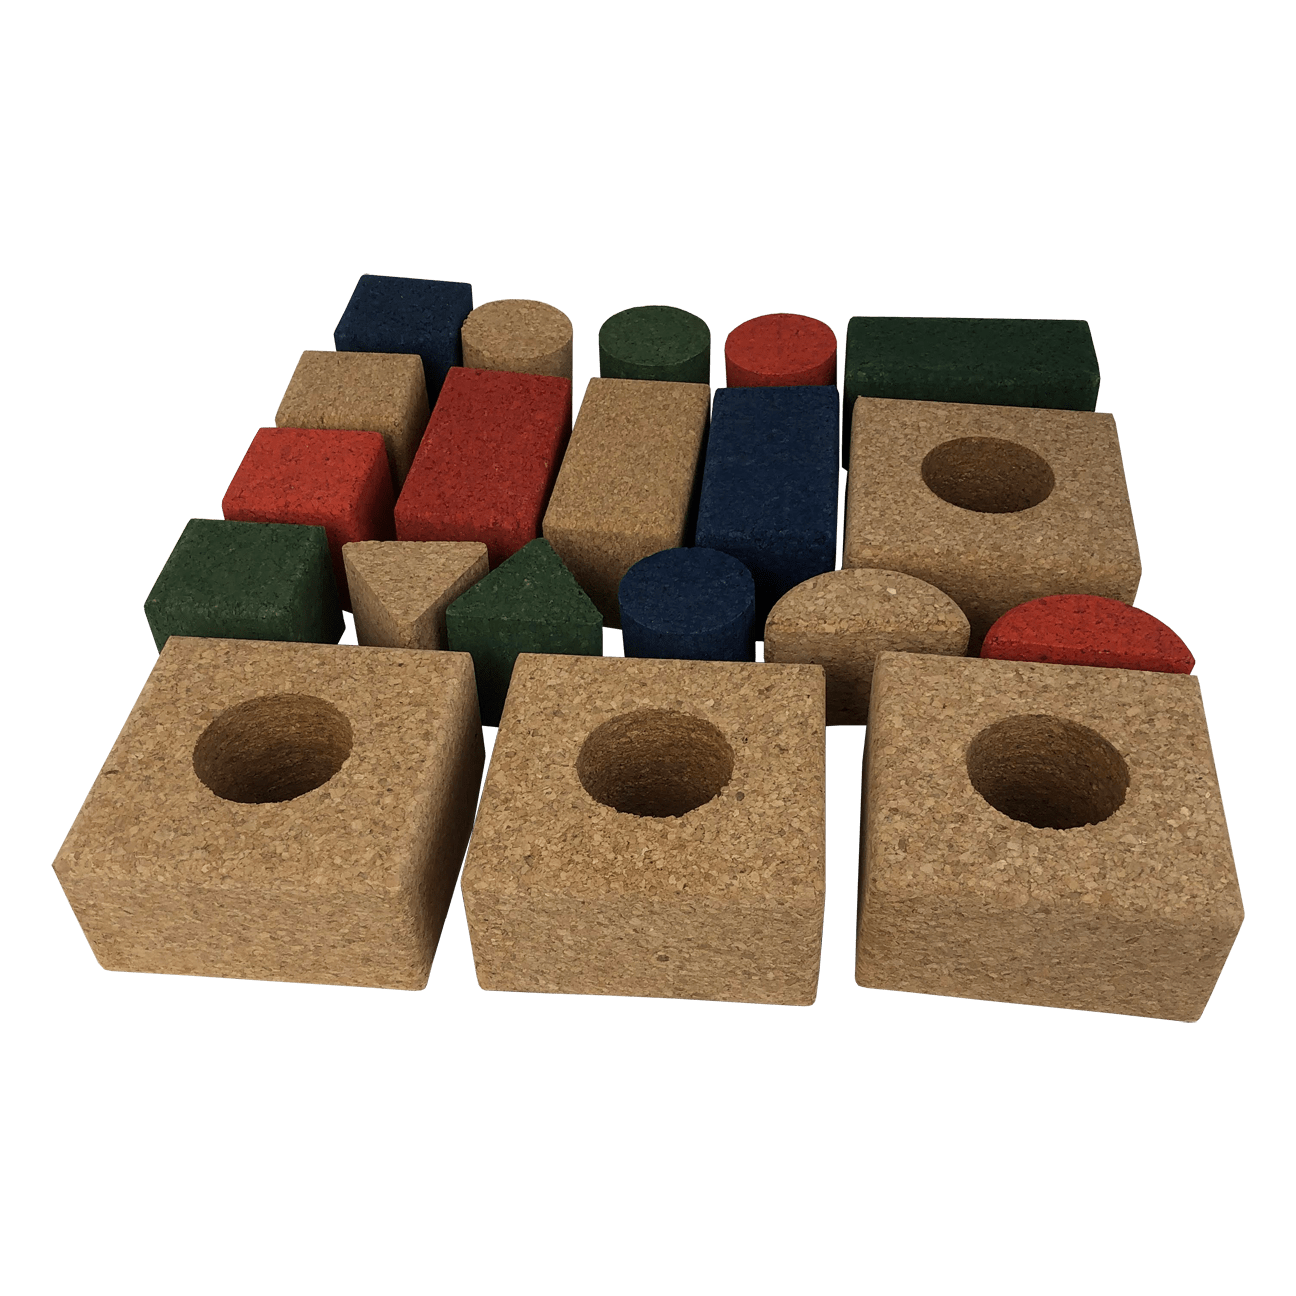 Cork Building Blocks for Kids - 20 Piece Set - CorkHouse